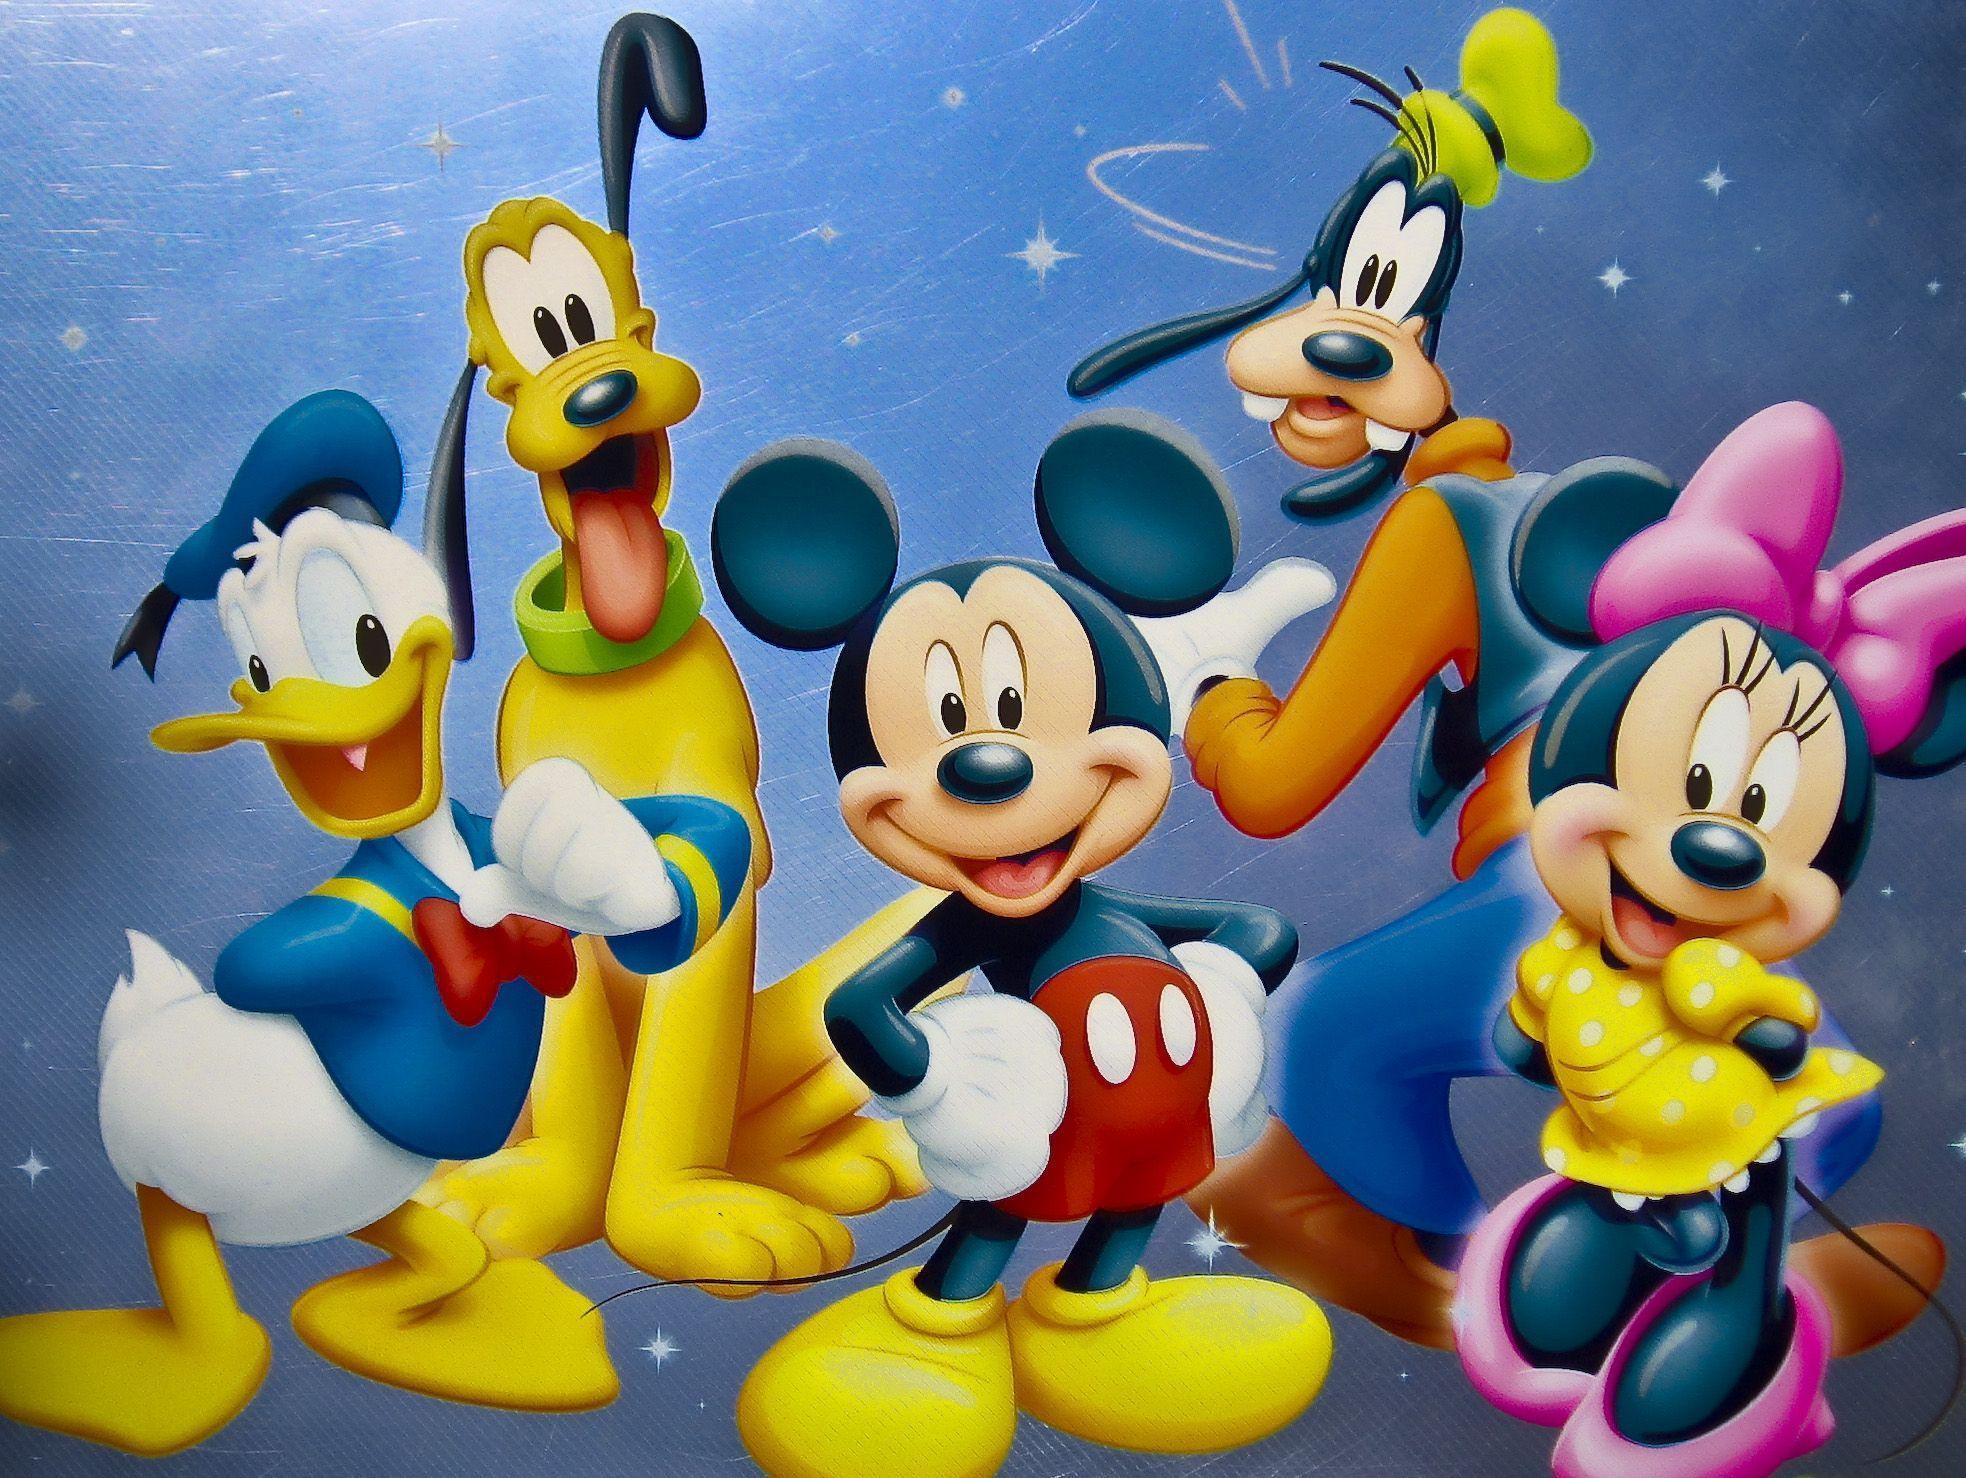 Disney Character High Definition Wallpaper Wallpaper